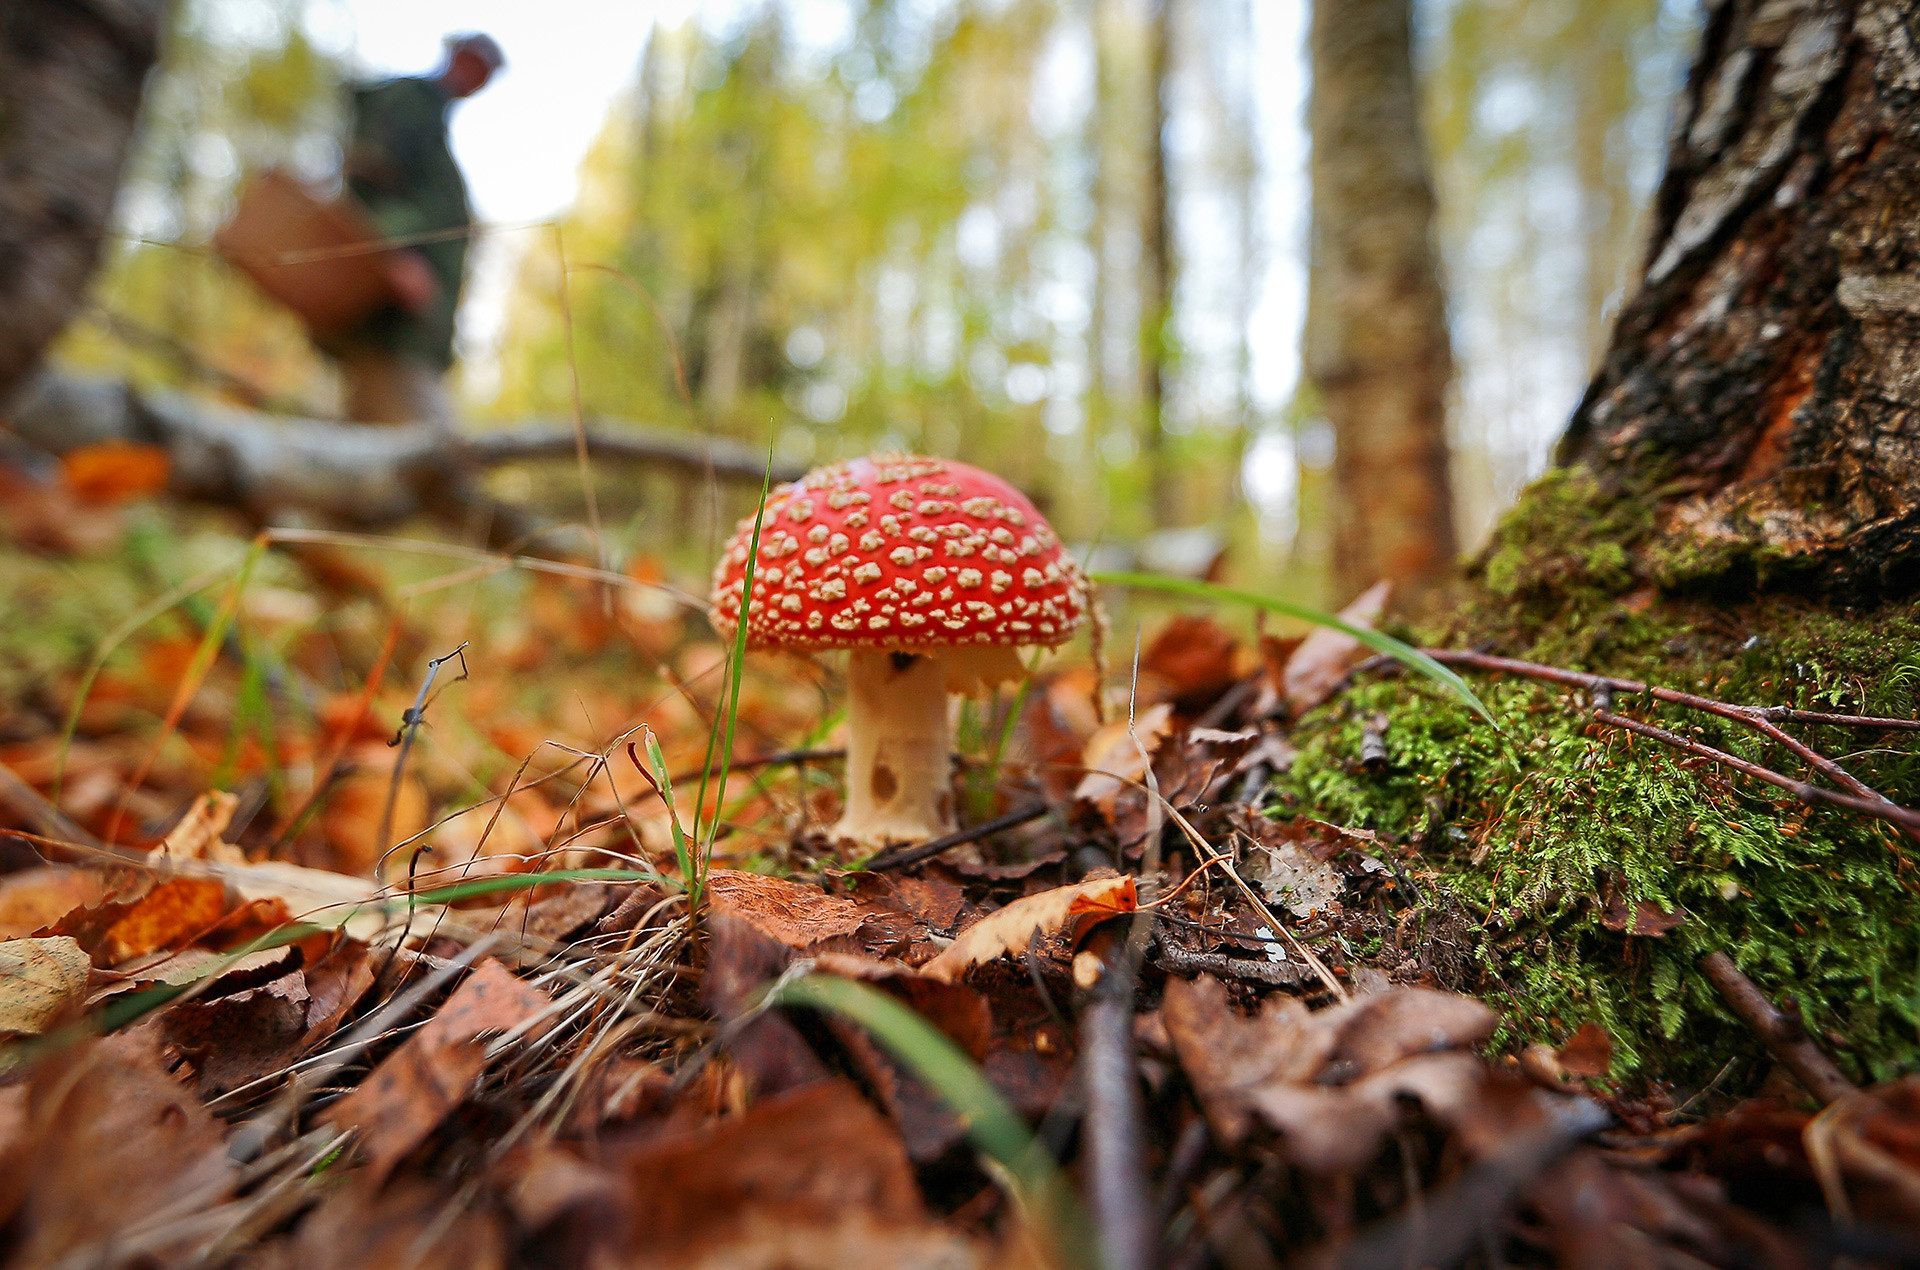 Agaric terbang, salah satu jenis jamur paling beracun di Rusia. Jangan memakannya!